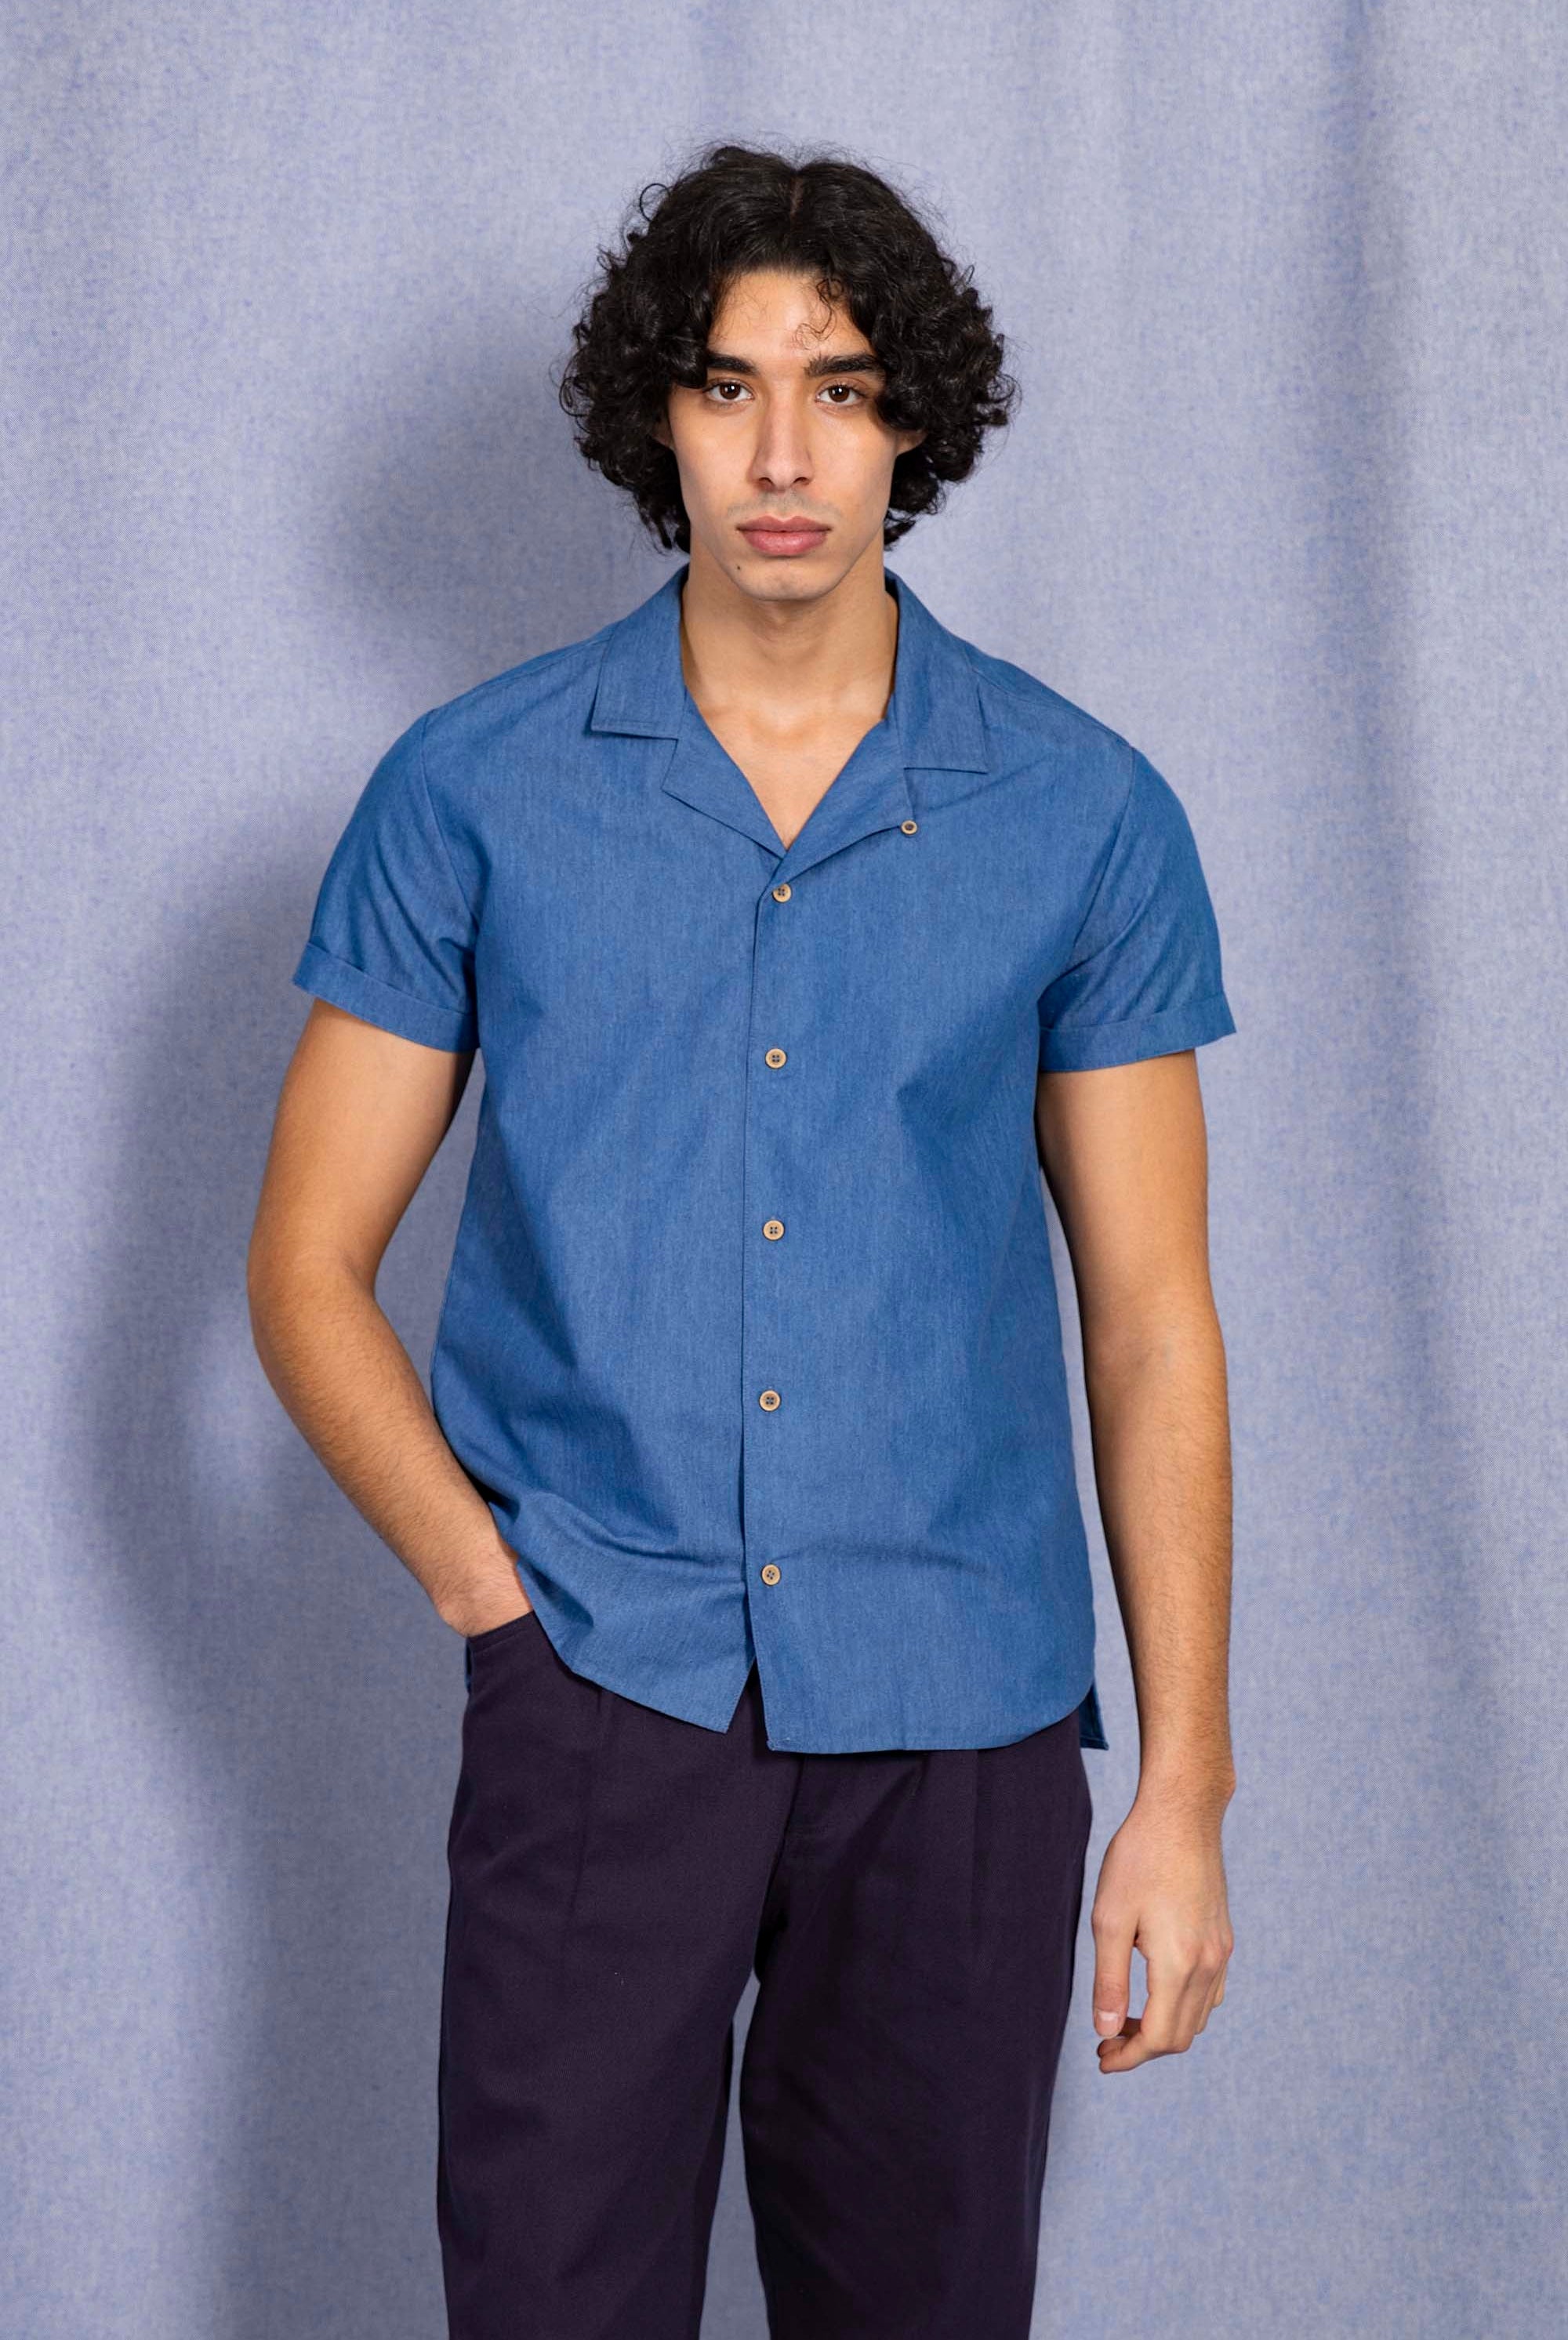 Chemise Fidel Bleu Ciel chemise homme aux lignes délicates, élégance assurée